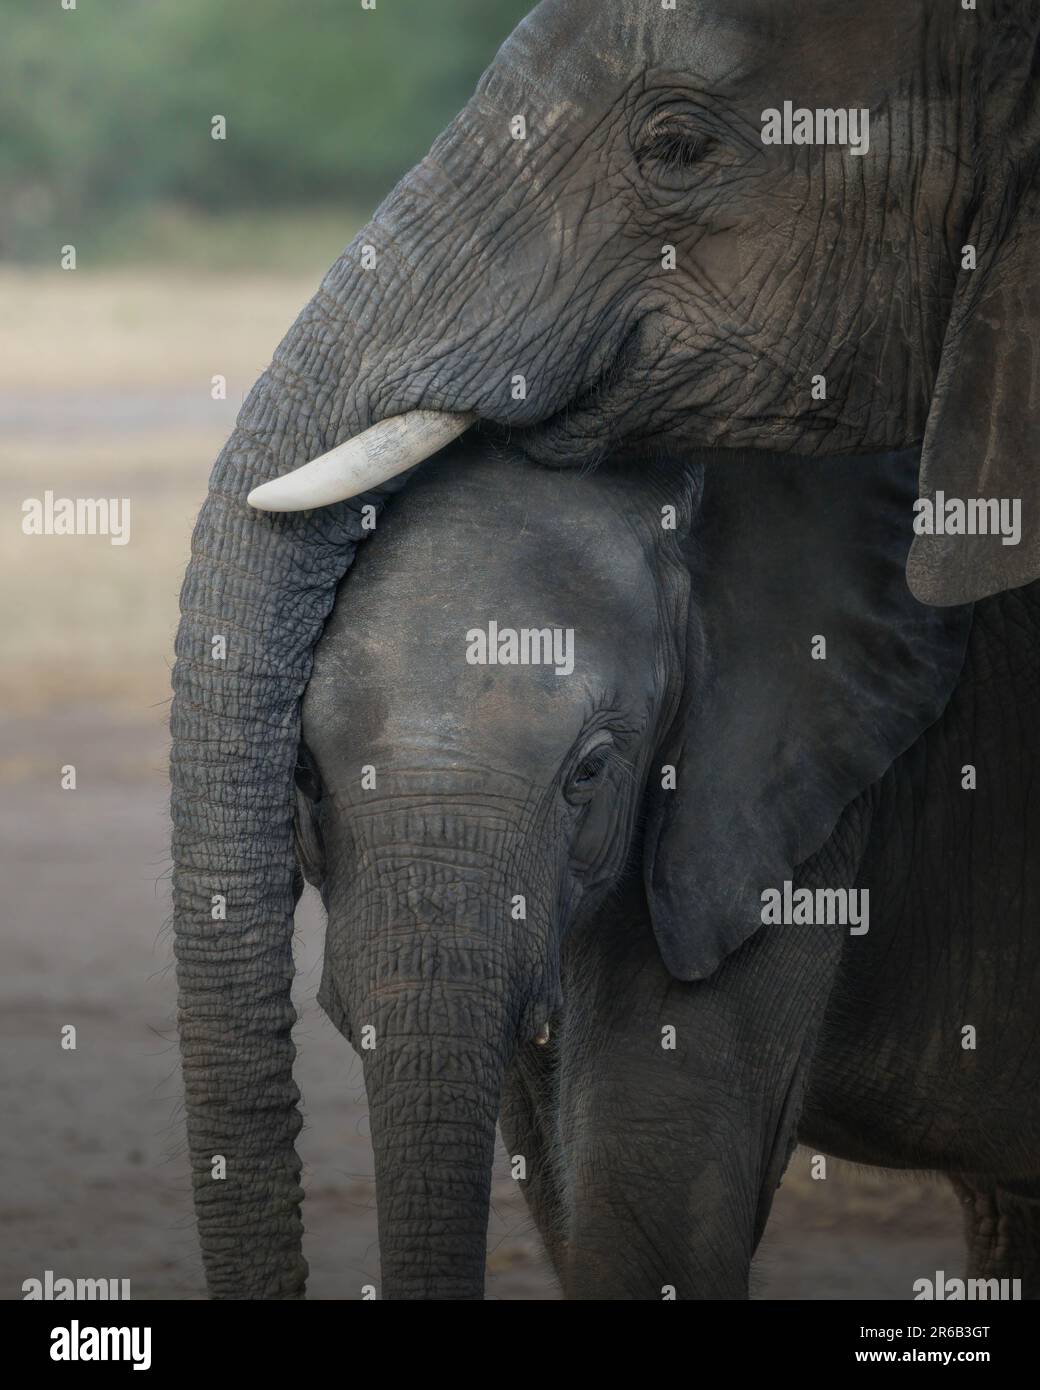 IMMAGINI INTIME mostrano una famiglia di bei giganti gentili appena in tempo per celebrare la Giornata Mondiale degli Elefanti il 12th agosto di quest'anno. Una foto mostra due b Foto Stock